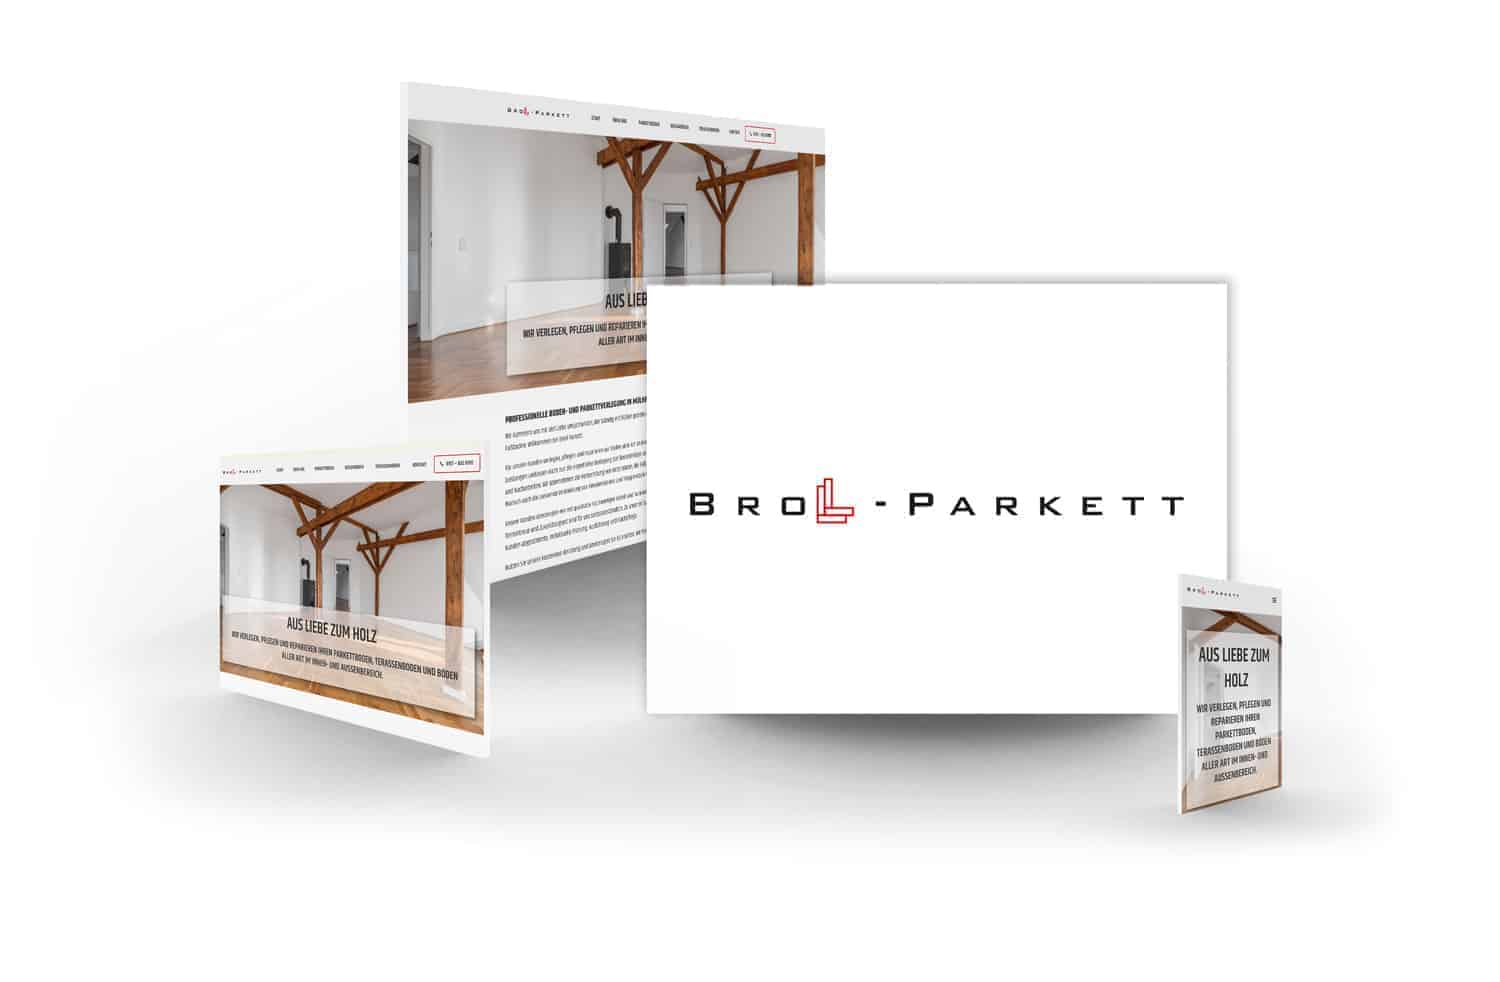 crocovision Webdesign Referenz Broll Parkett GmbH